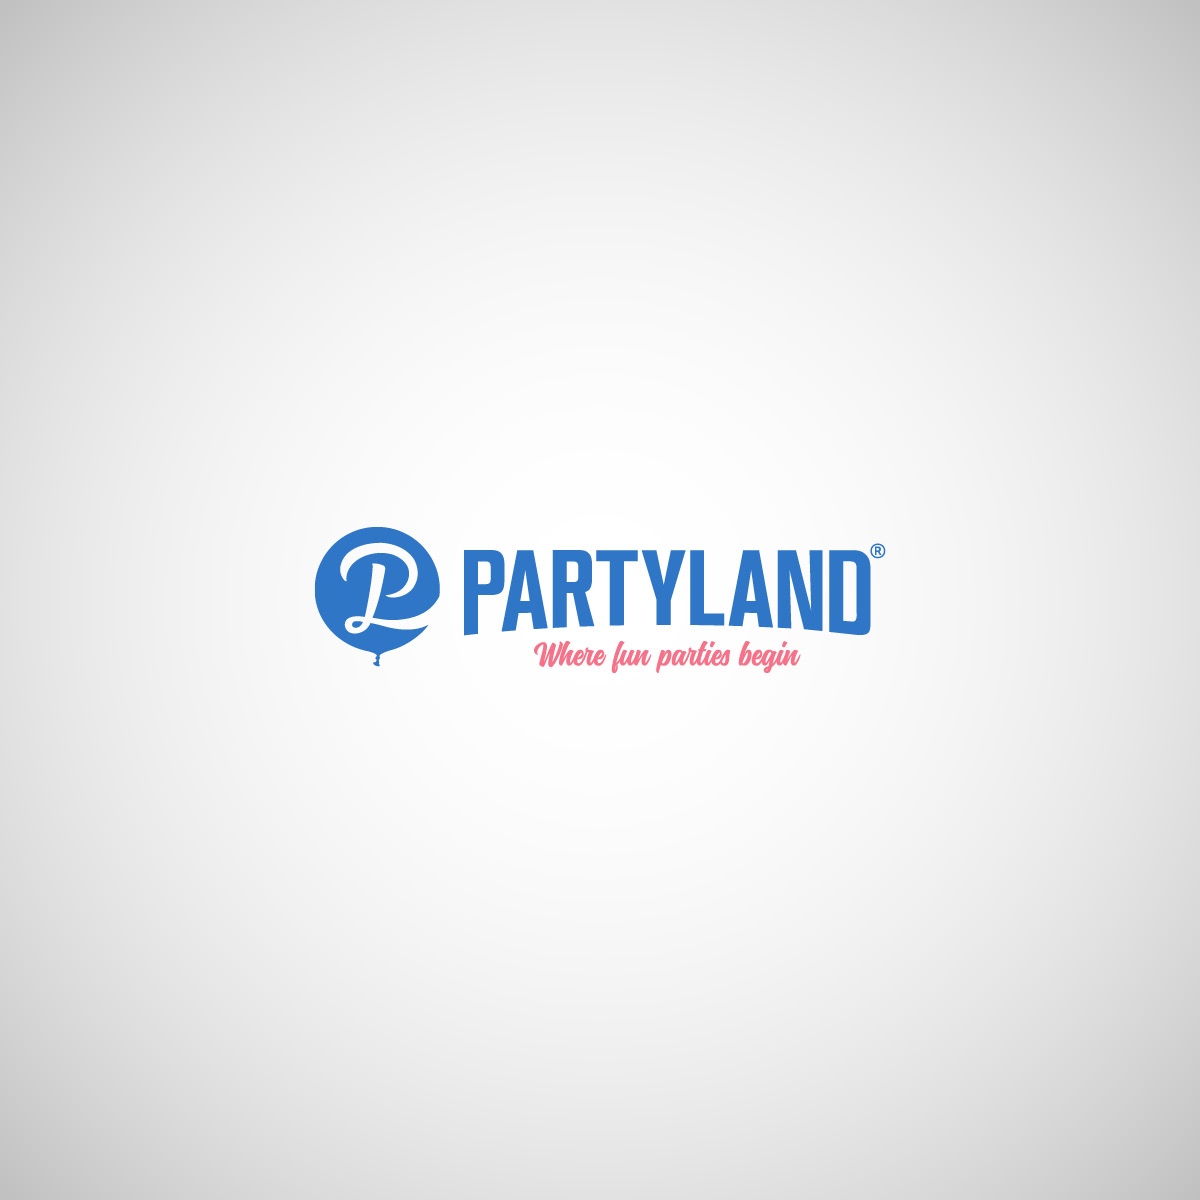 Partyland_1200x1200.jpg